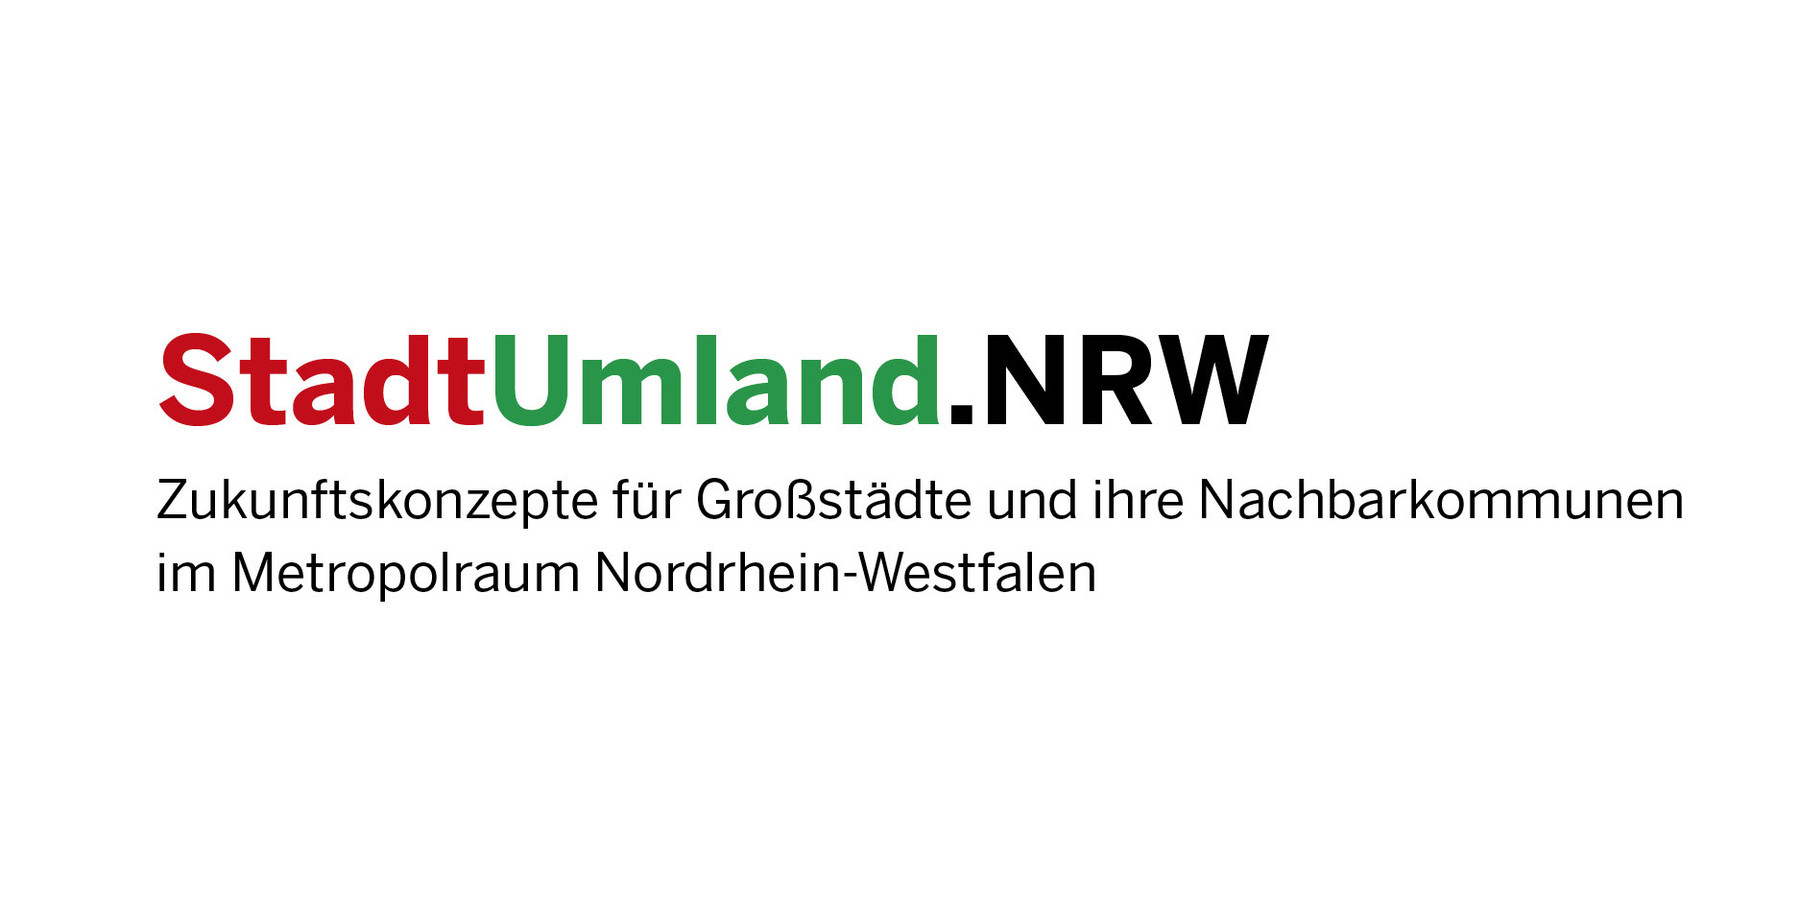 StadtUmland NRW Federmann und Kampczyk Design gmbh